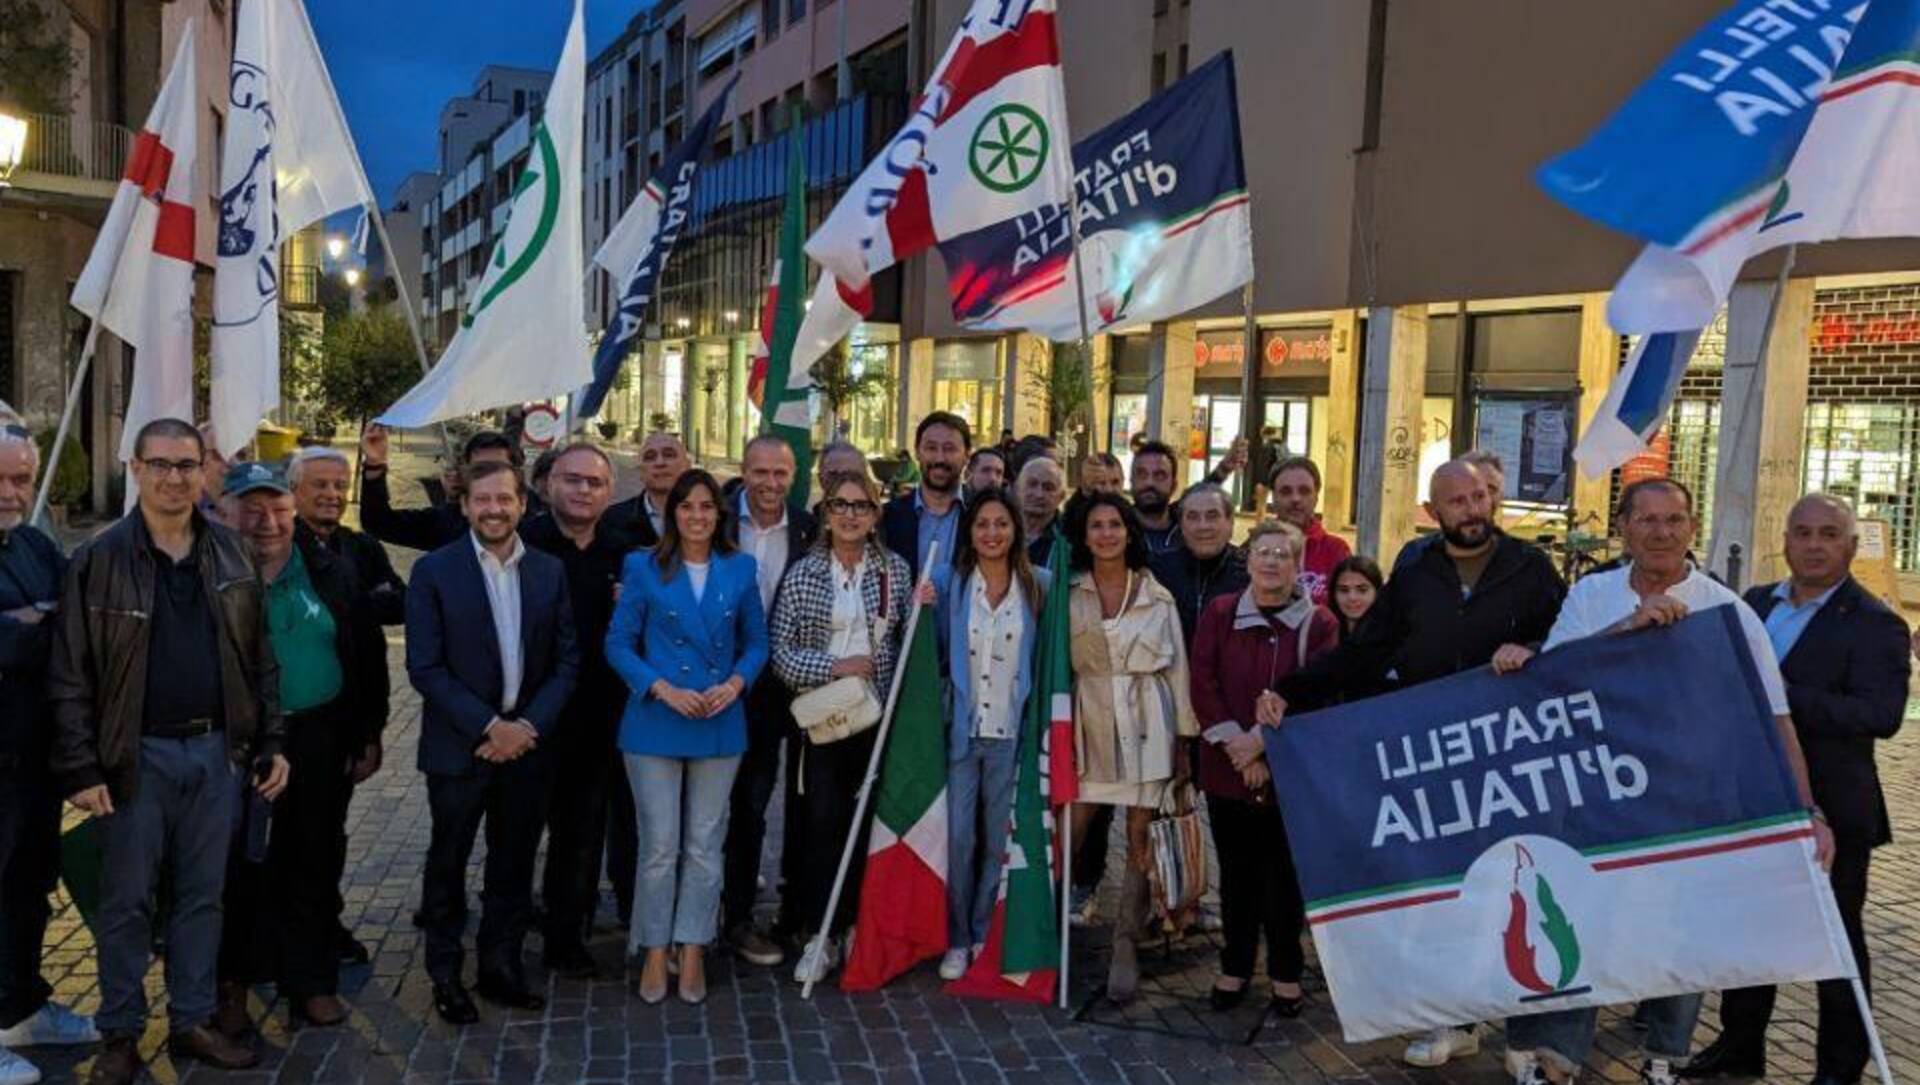 Saronno, flash mob del centrodestra per la sicurezza con Romeo, Tovaglieri, Monti e Longhini